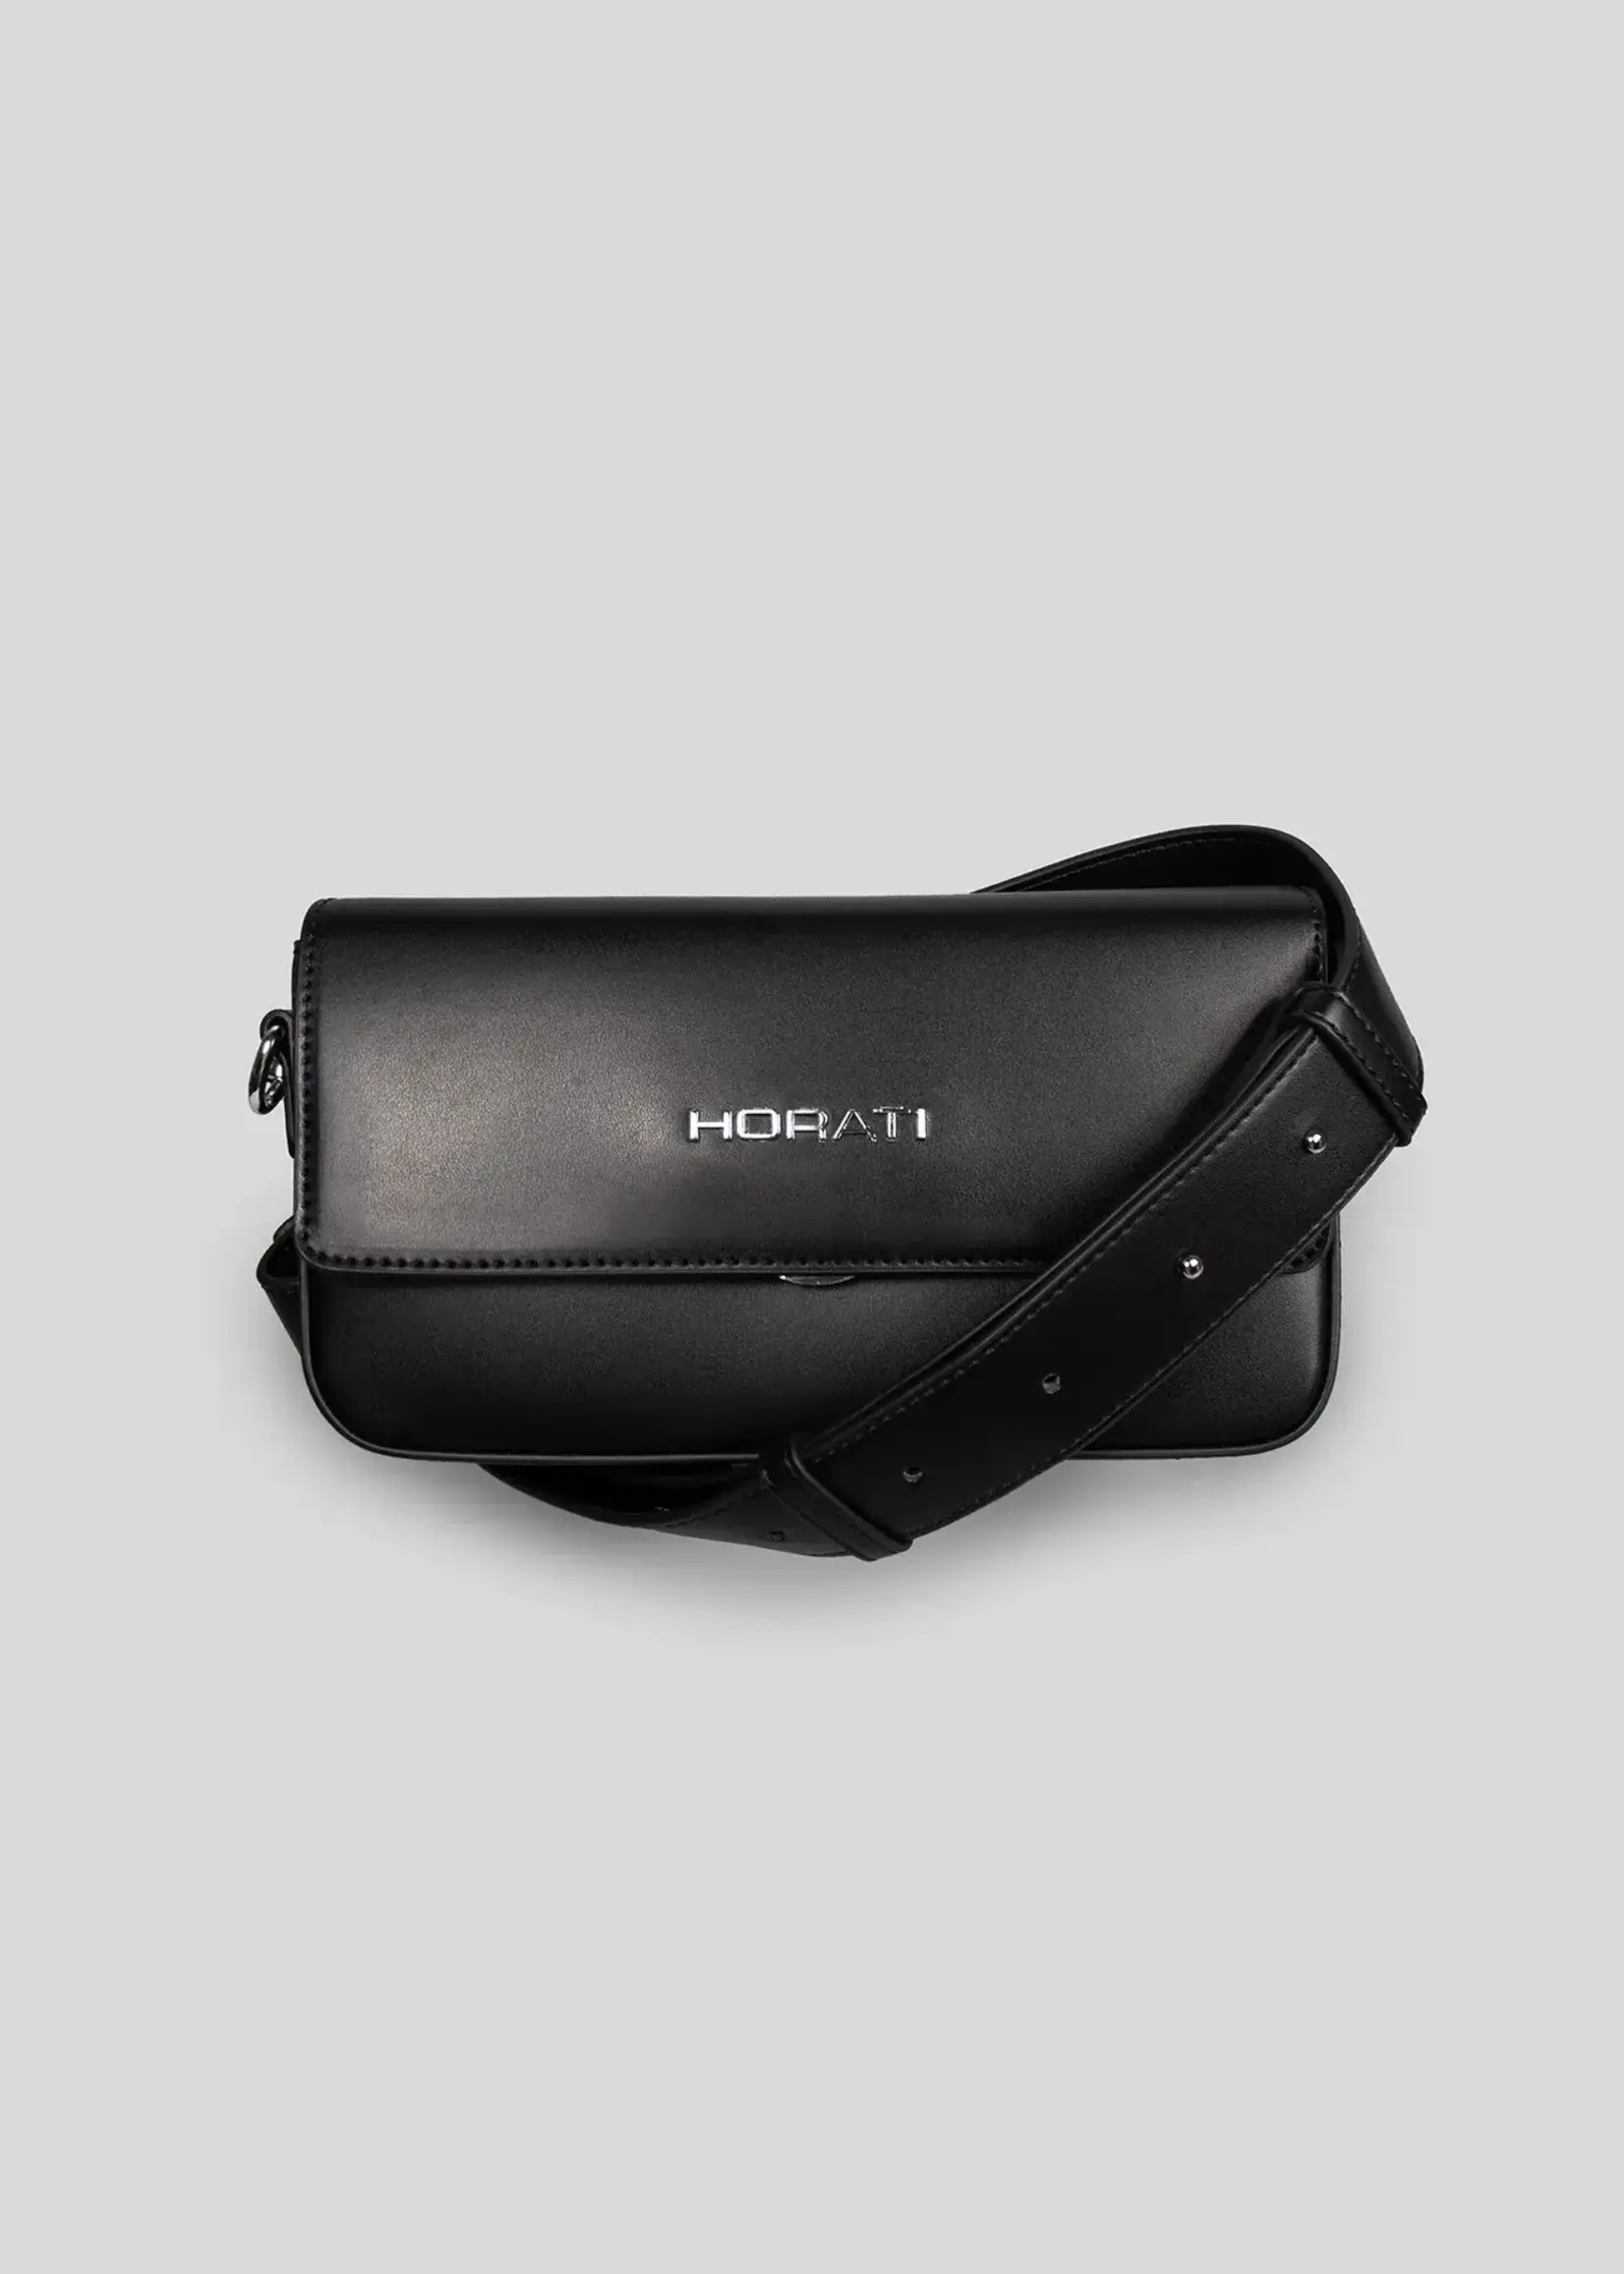 Horati HORATI Vegan Leather Bag